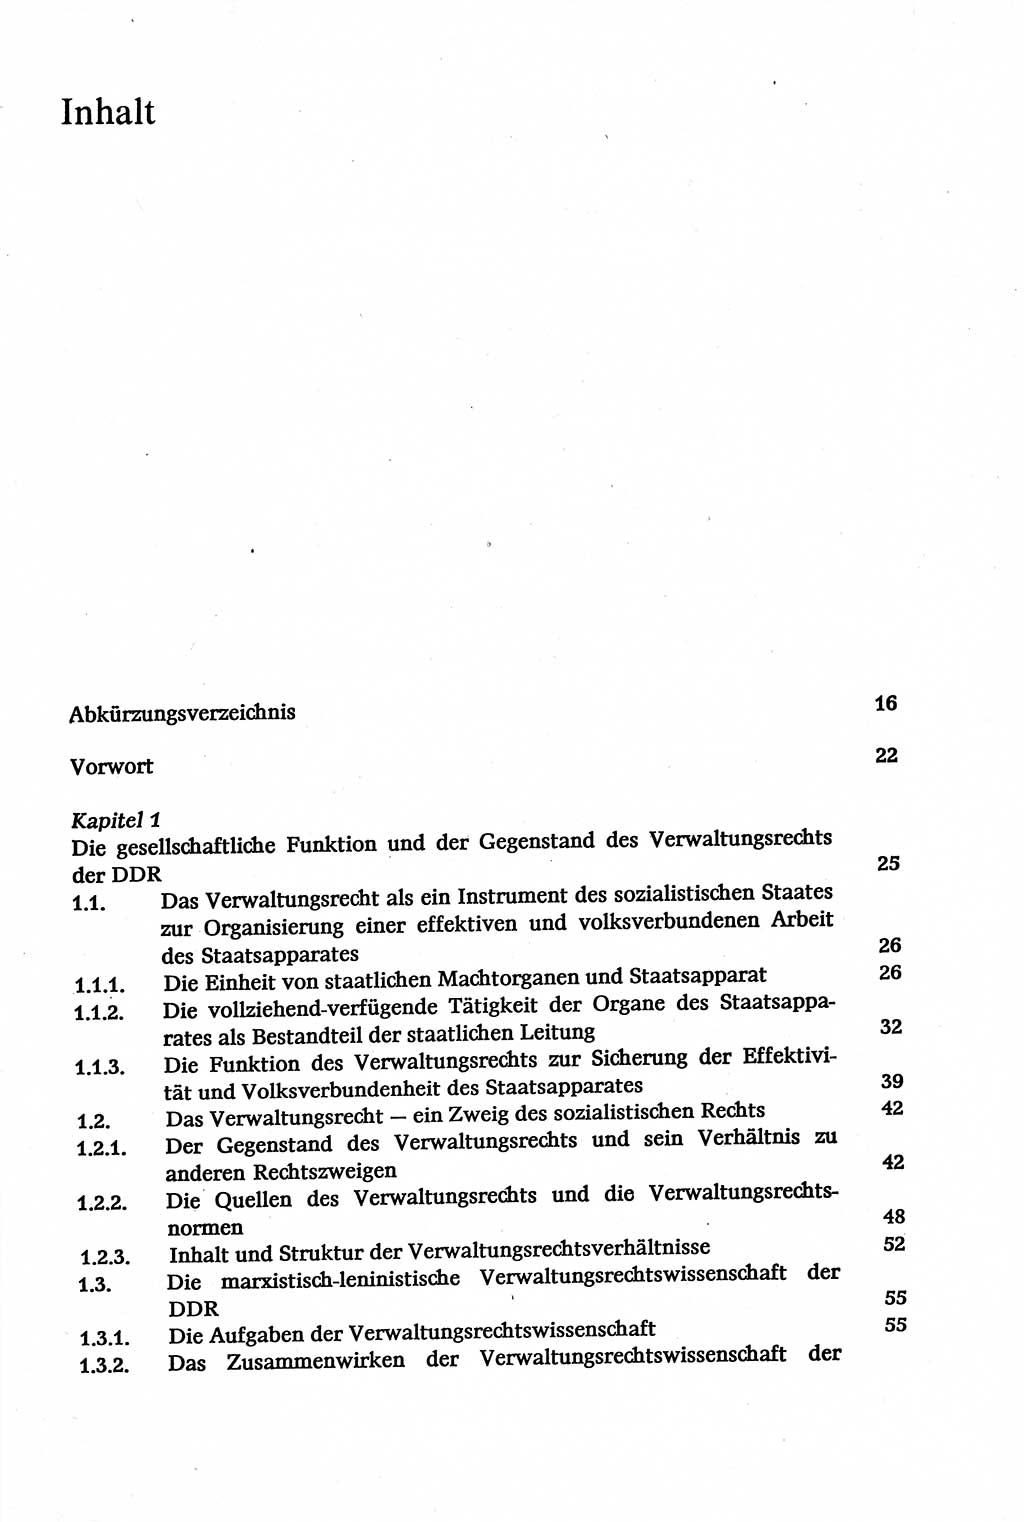 Verwaltungsrecht [Deutsche Demokratische Republik (DDR)], Lehrbuch 1979, Seite 5 (Verw.-R. DDR Lb. 1979, S. 5)